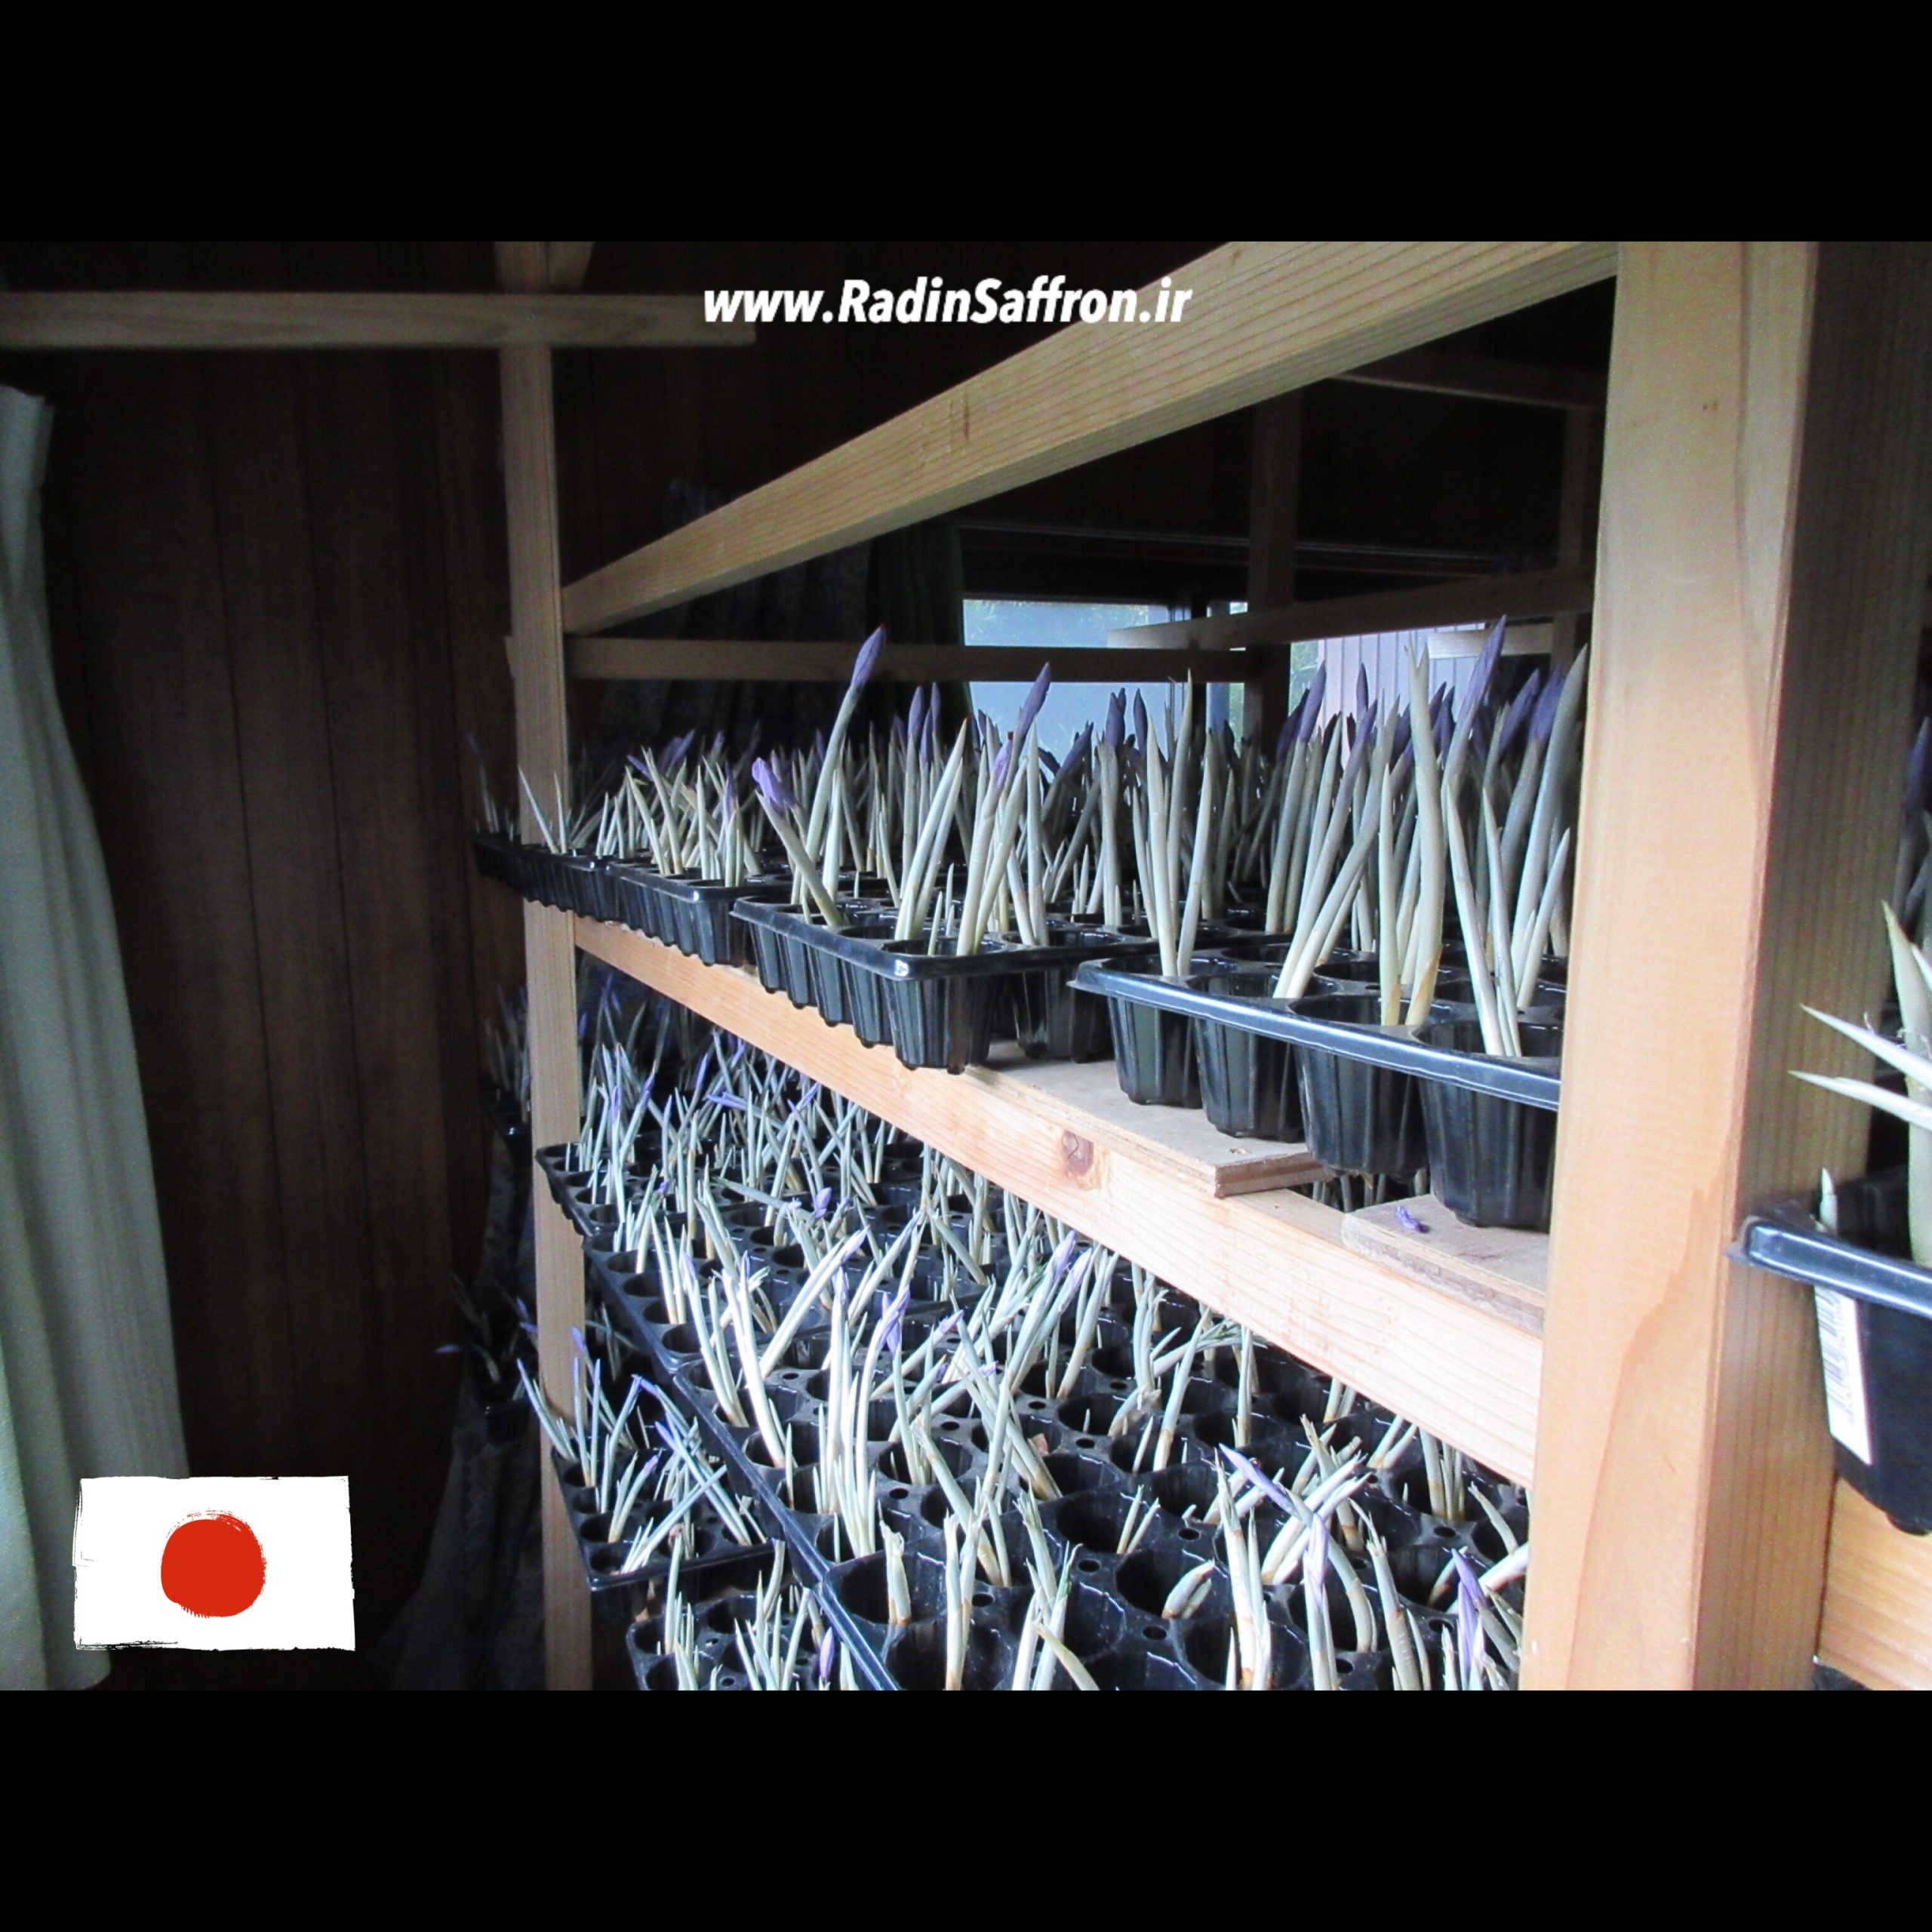 زعفران آیروپونیک در کشور ژاپن